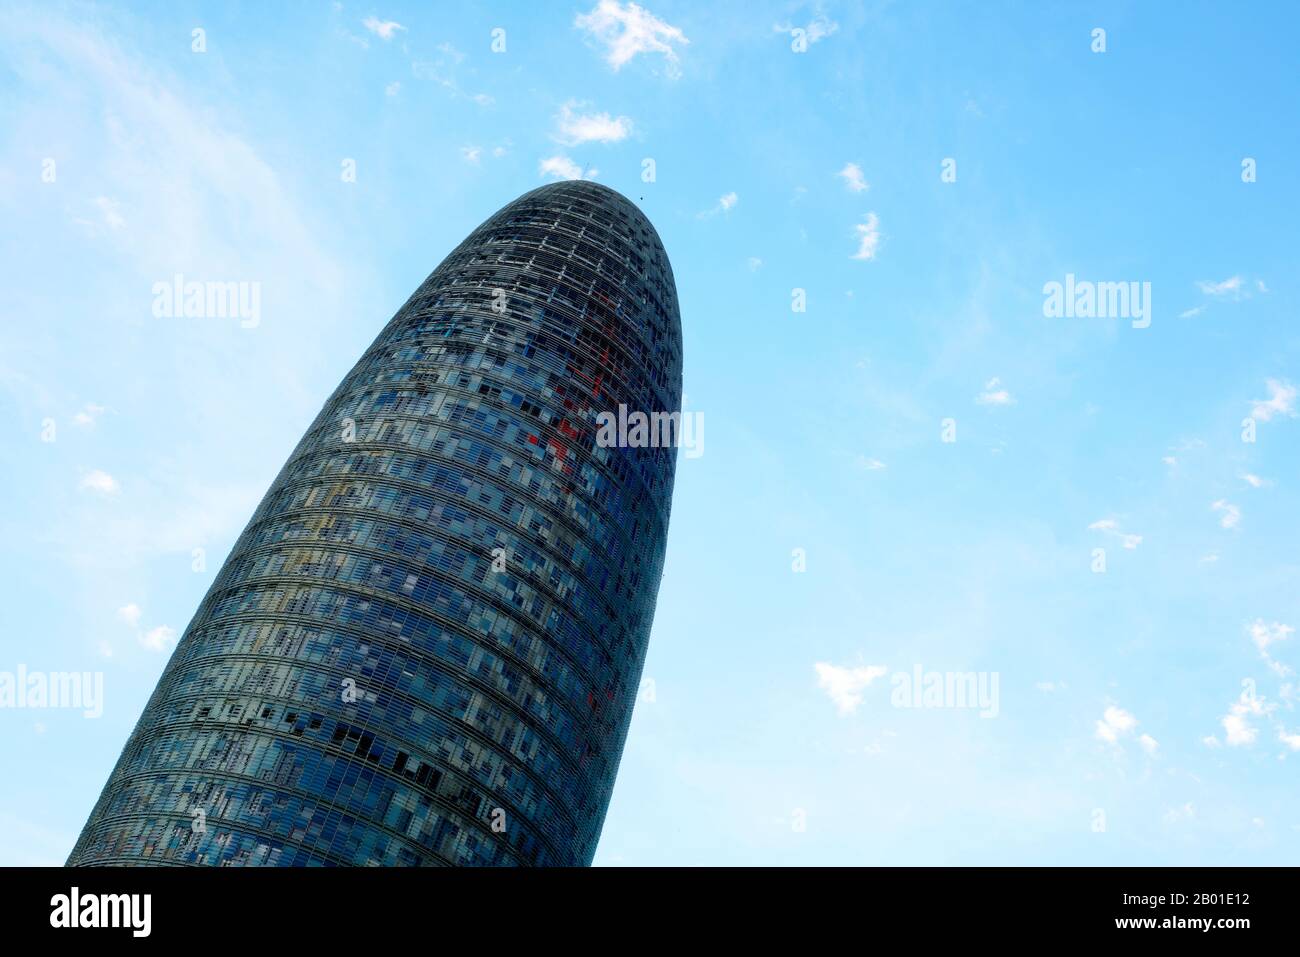 Barcelona, SPANIEN - 7. AUGUST 2017: Das Torre Glories Gebäude, das früher Torre Agbar genannt wurde, hat sich in Barcelona, Spanien gegen den Himmel ausgeklatschen lassen. Diese 38-stöckige Stockfoto